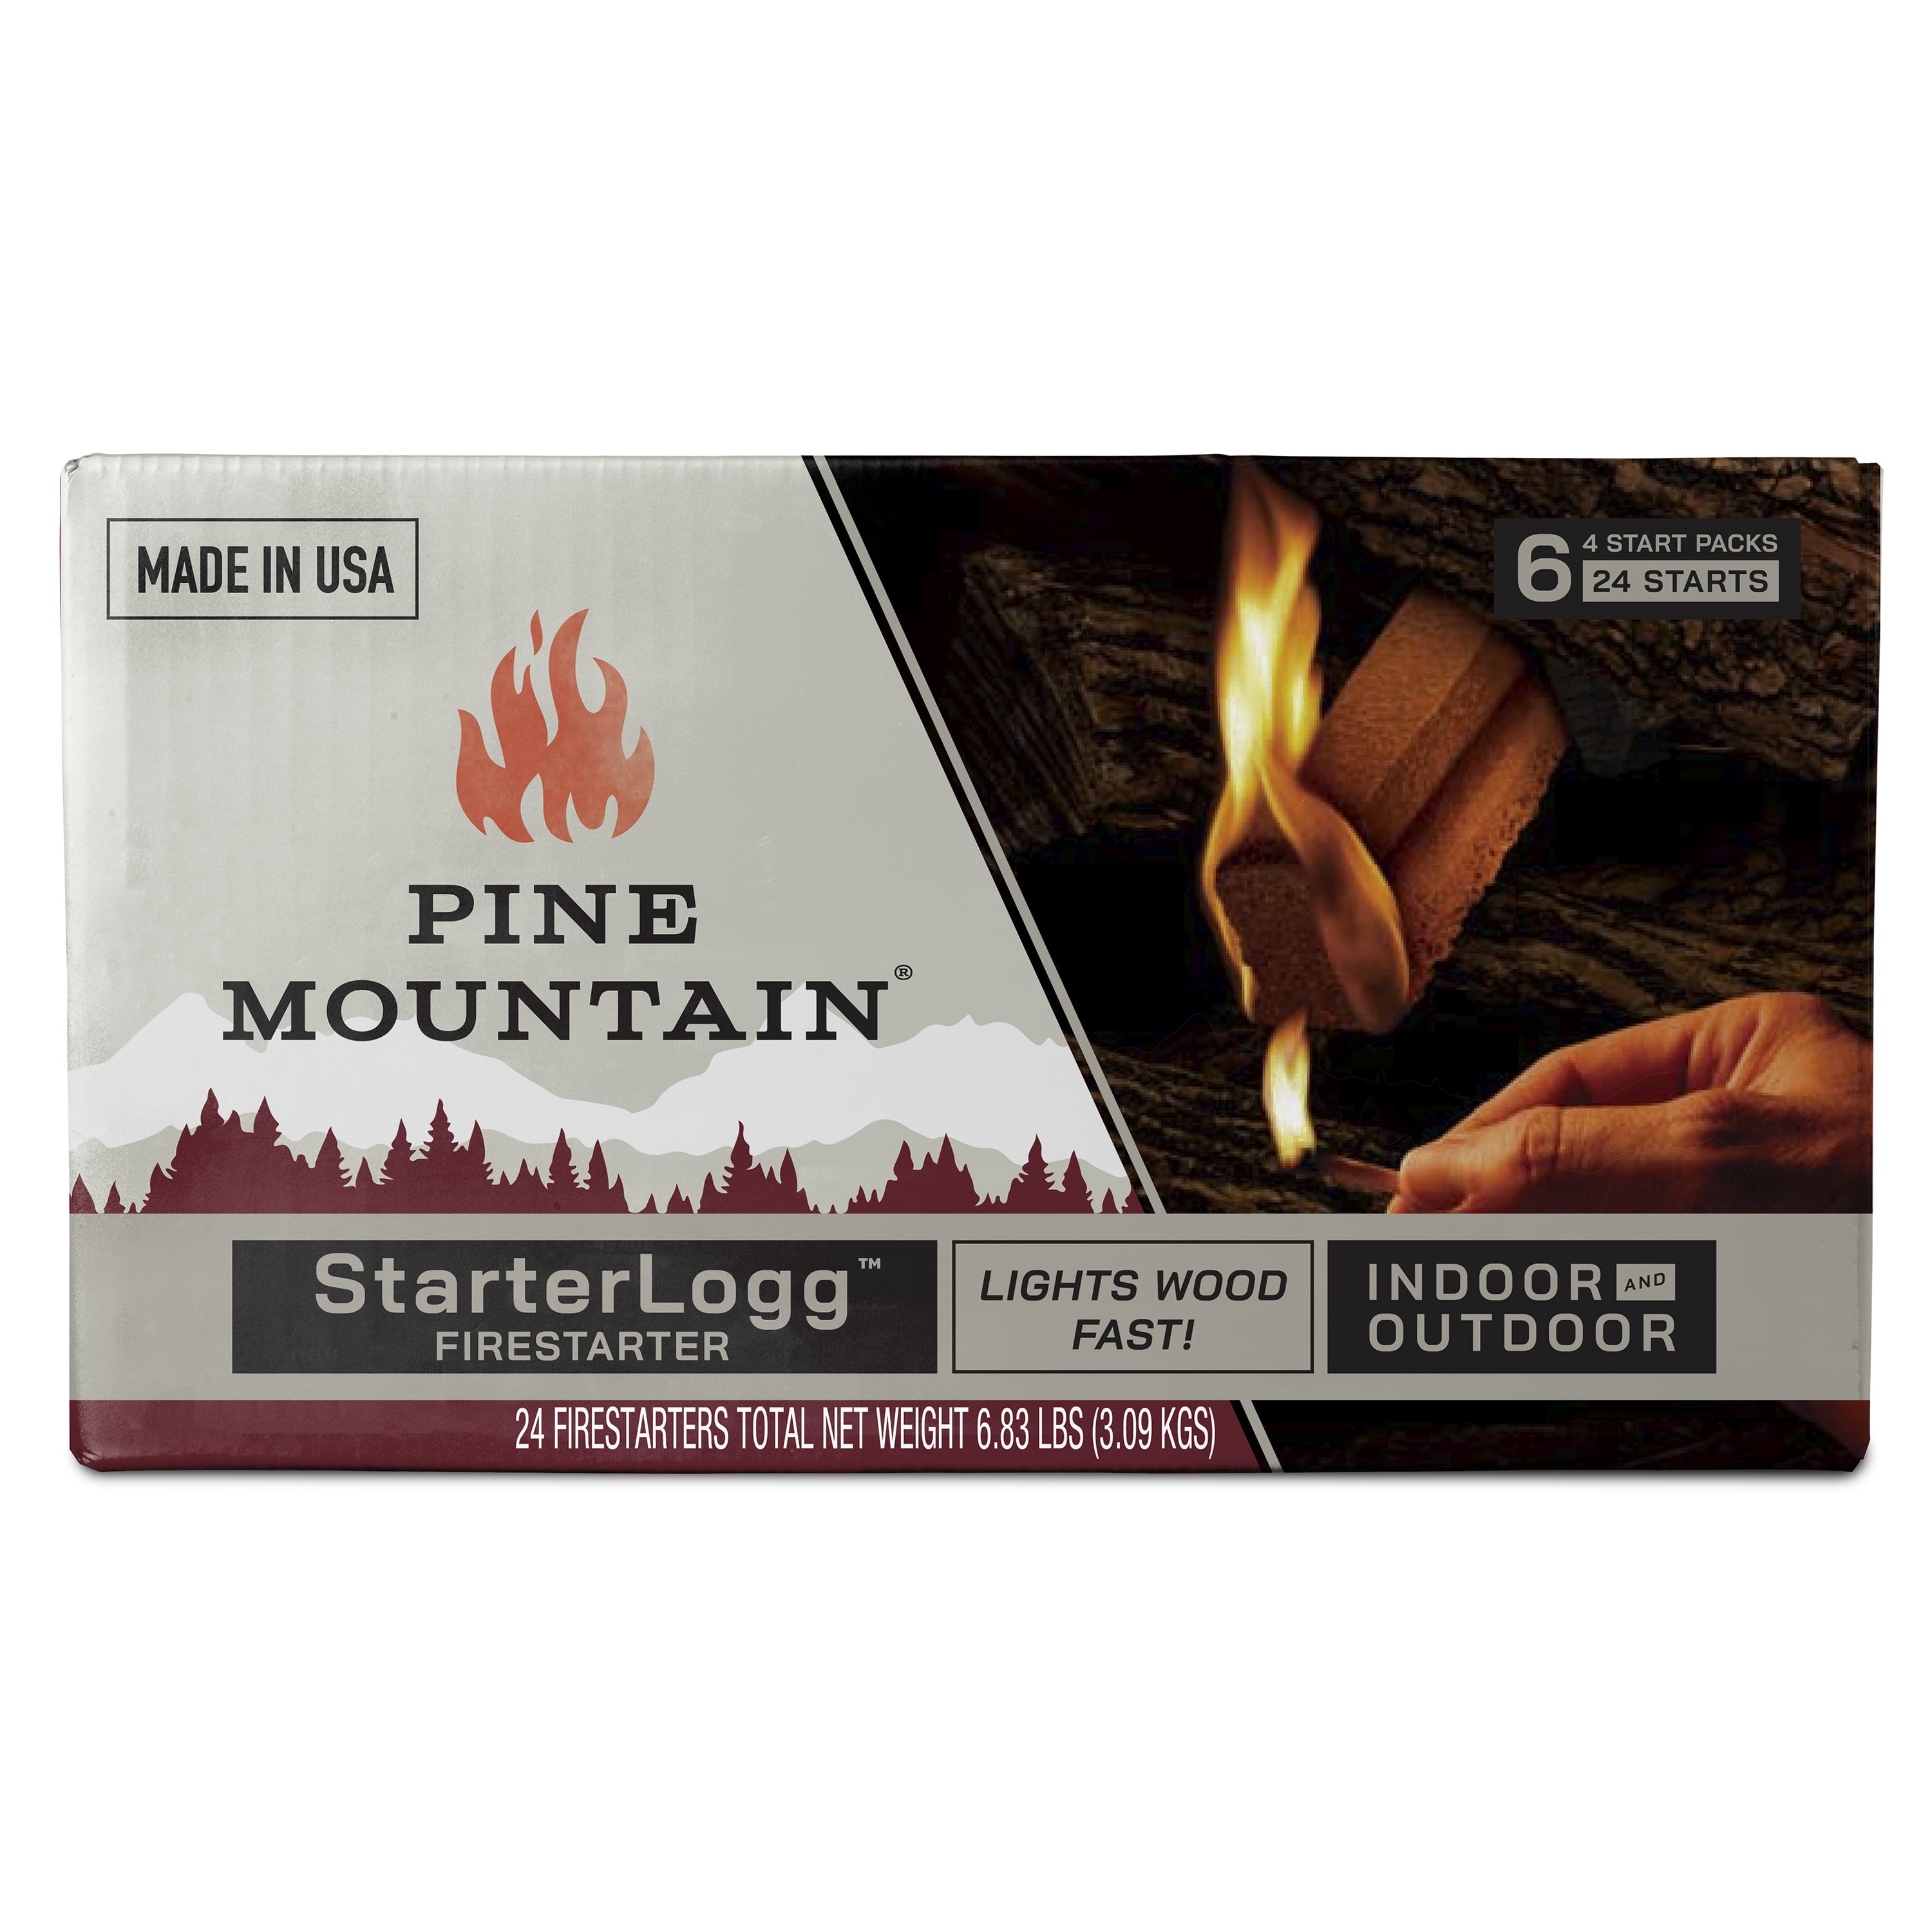 Pine Mountain Starterlogg Firestarter Pack - 24